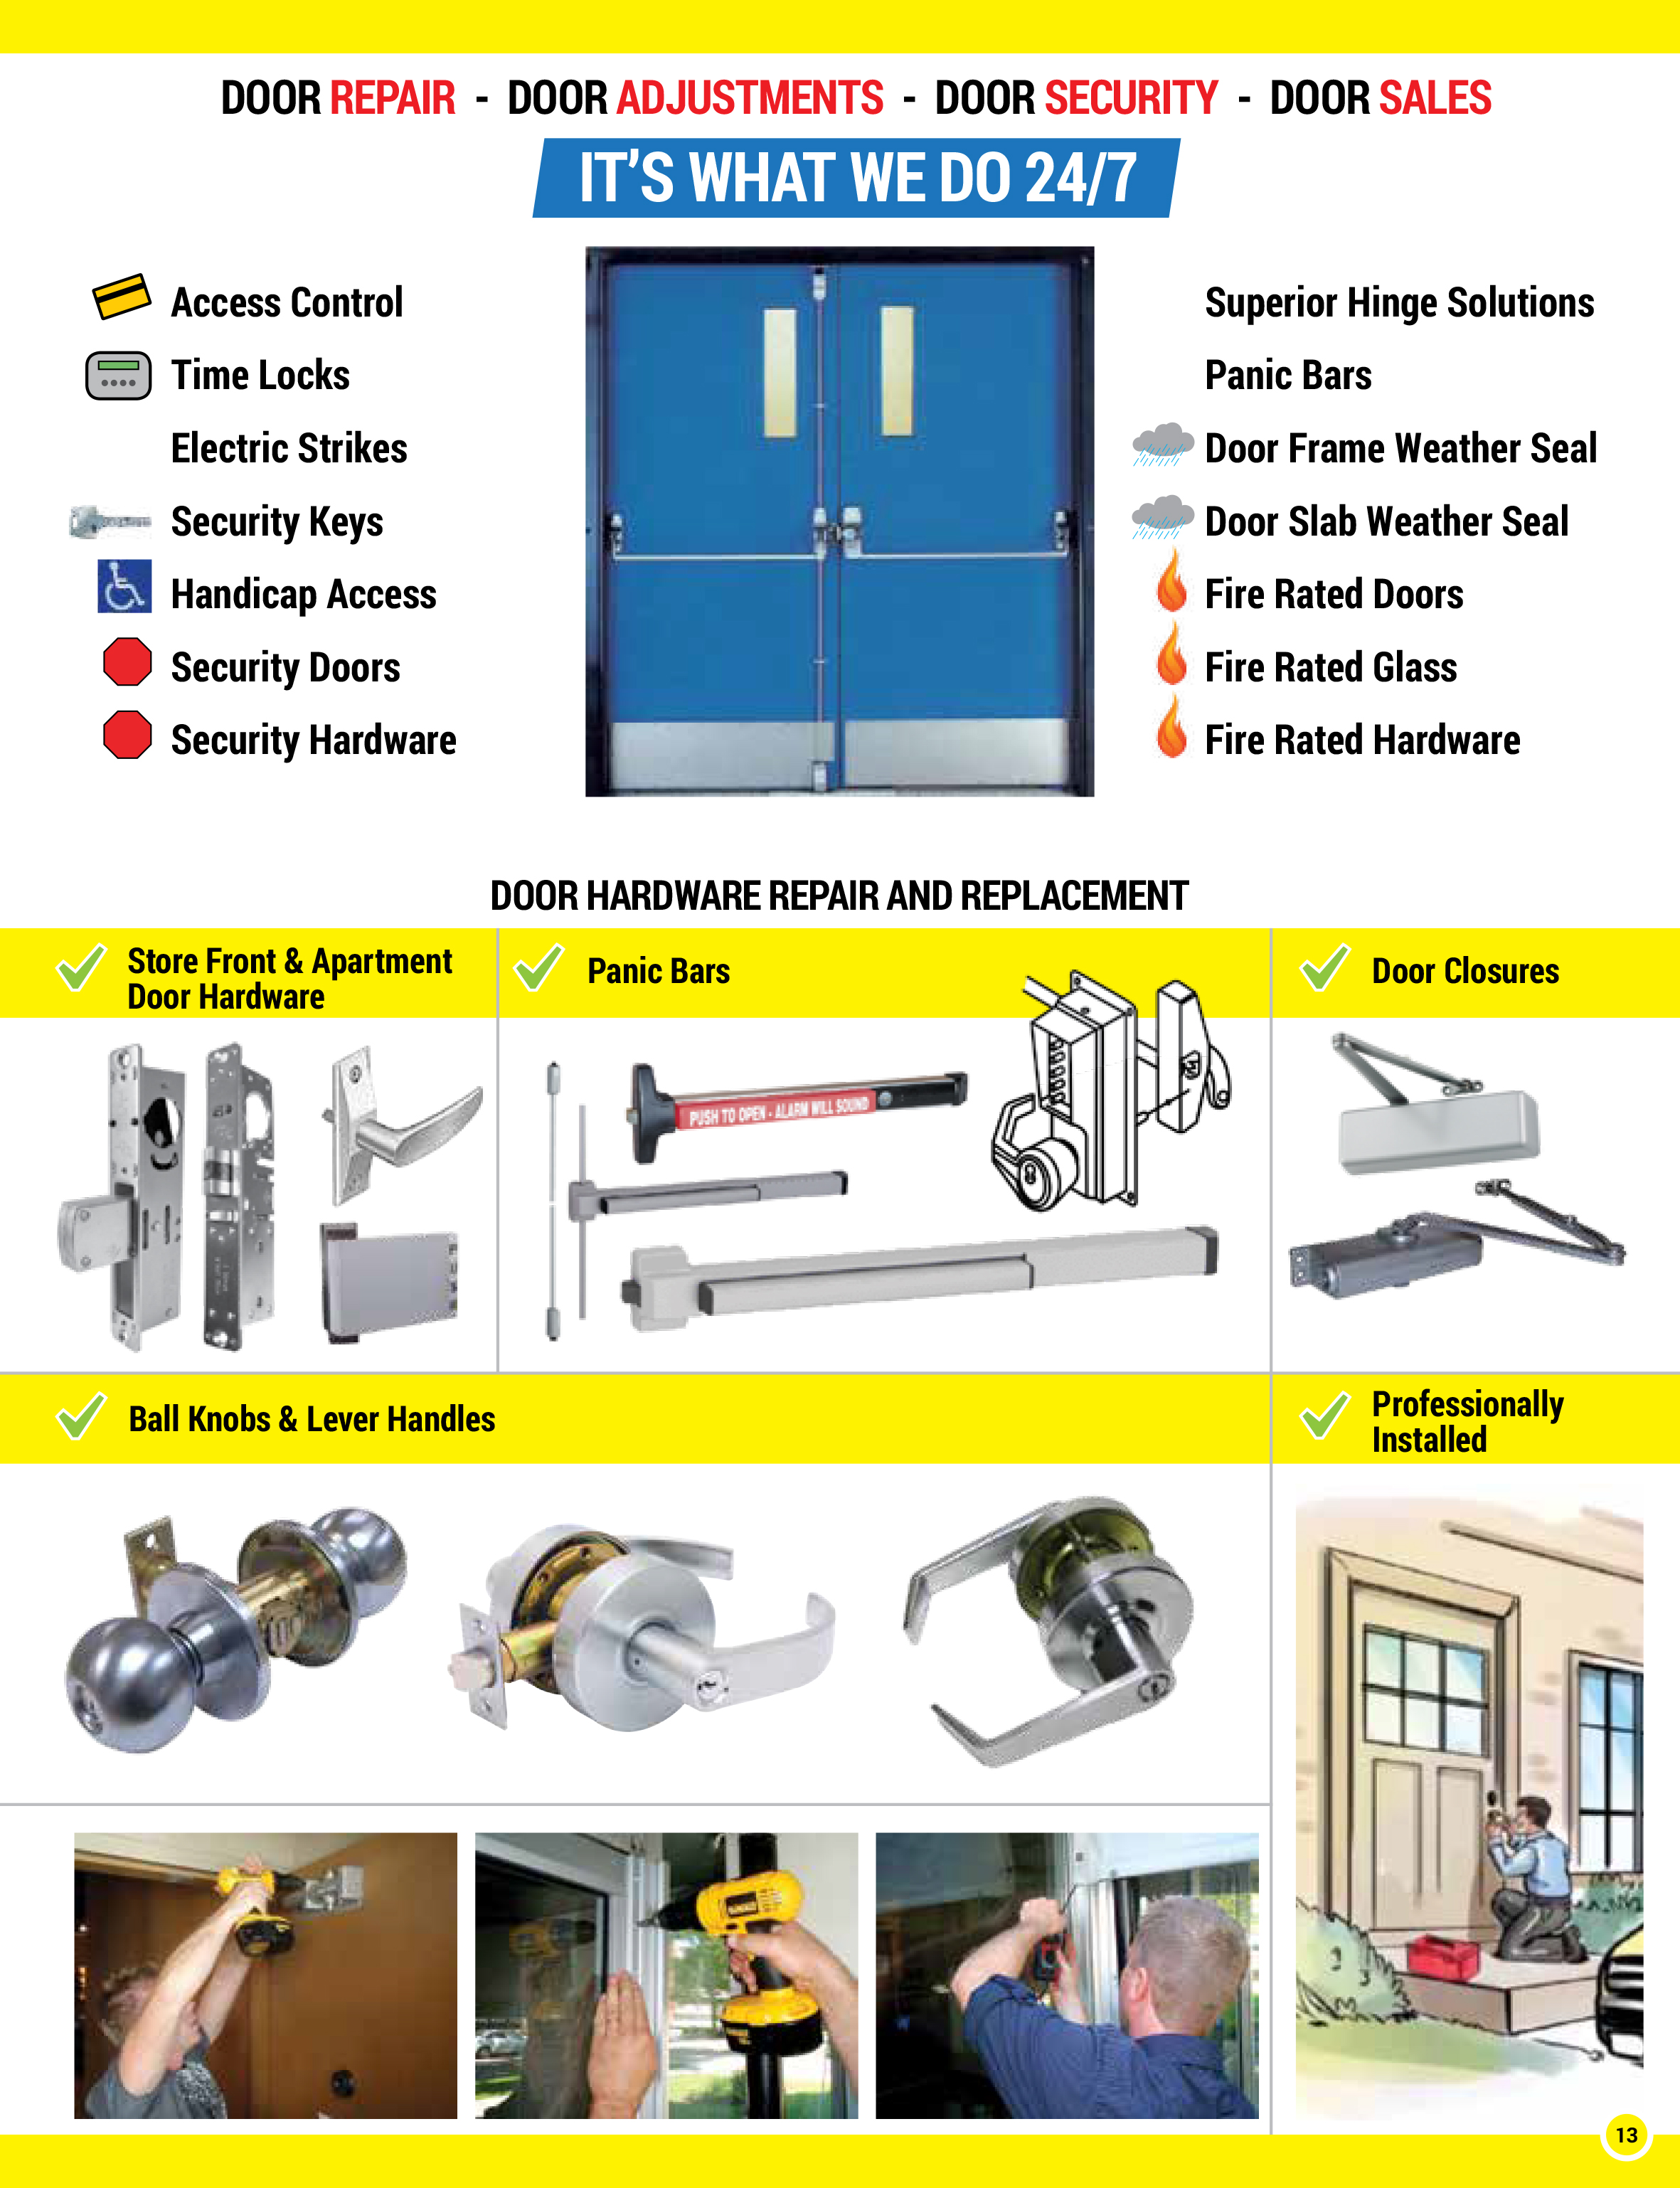 Door Surgeon provides superior mobile repair service for Door repair door adjustments & door sales.